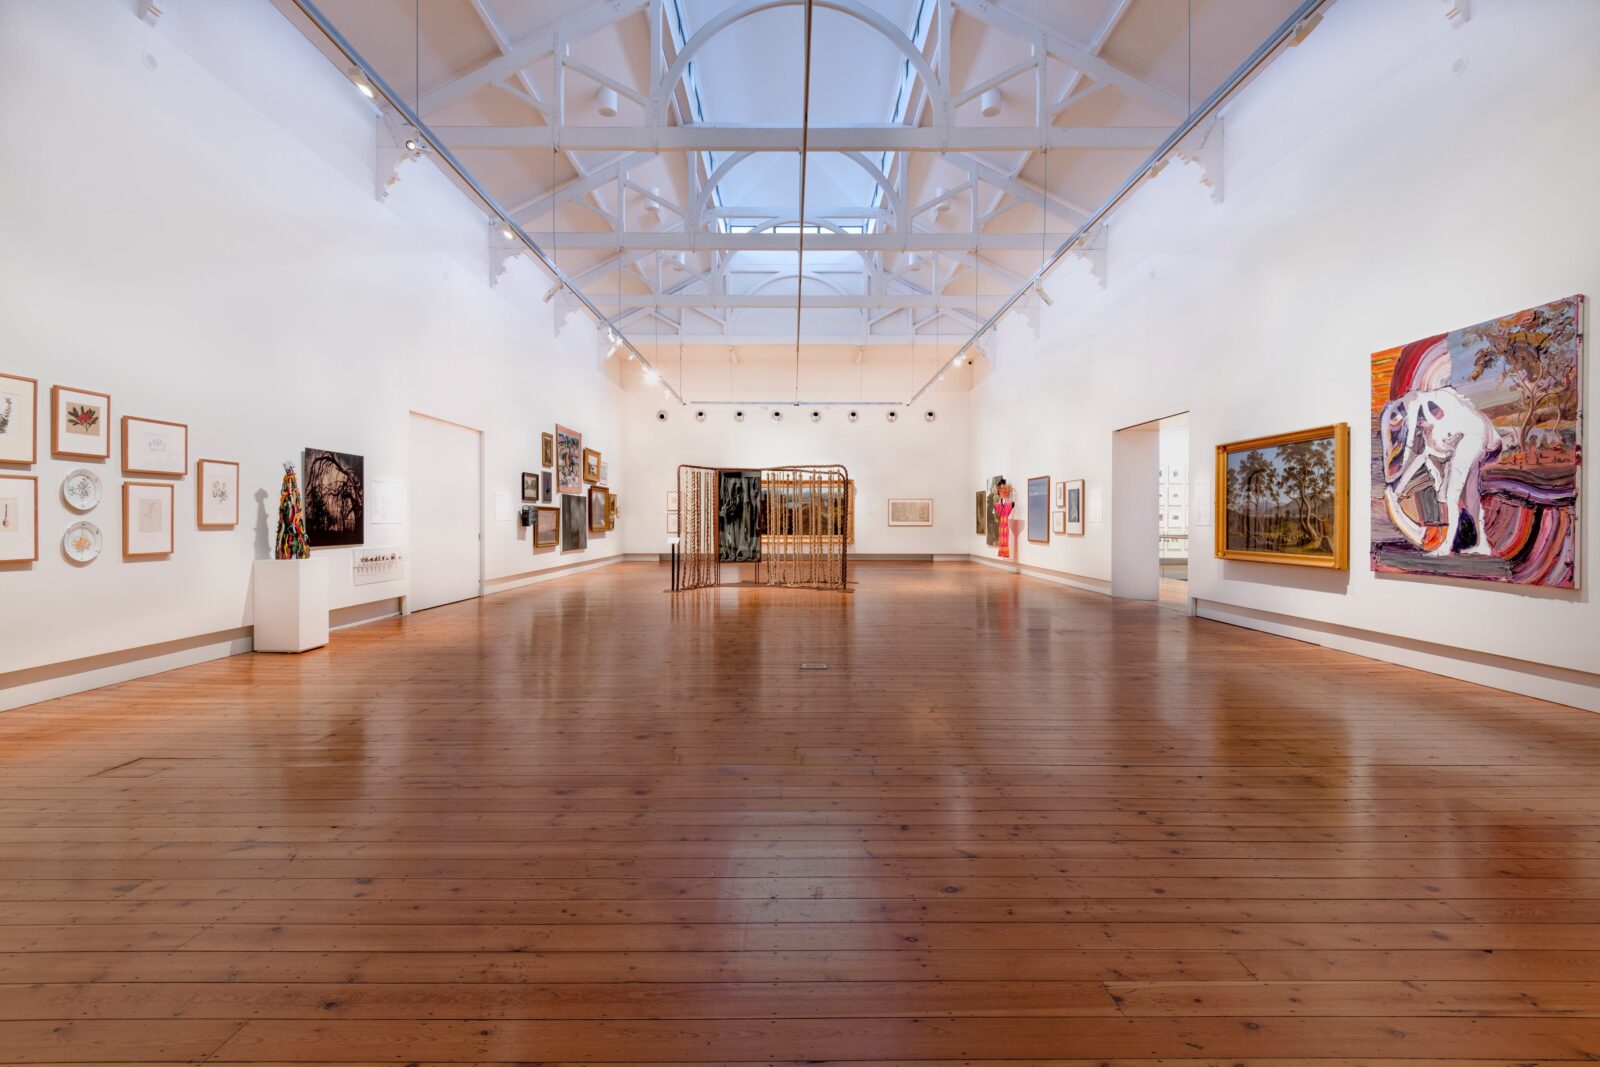 Main Gallery at Royal Park